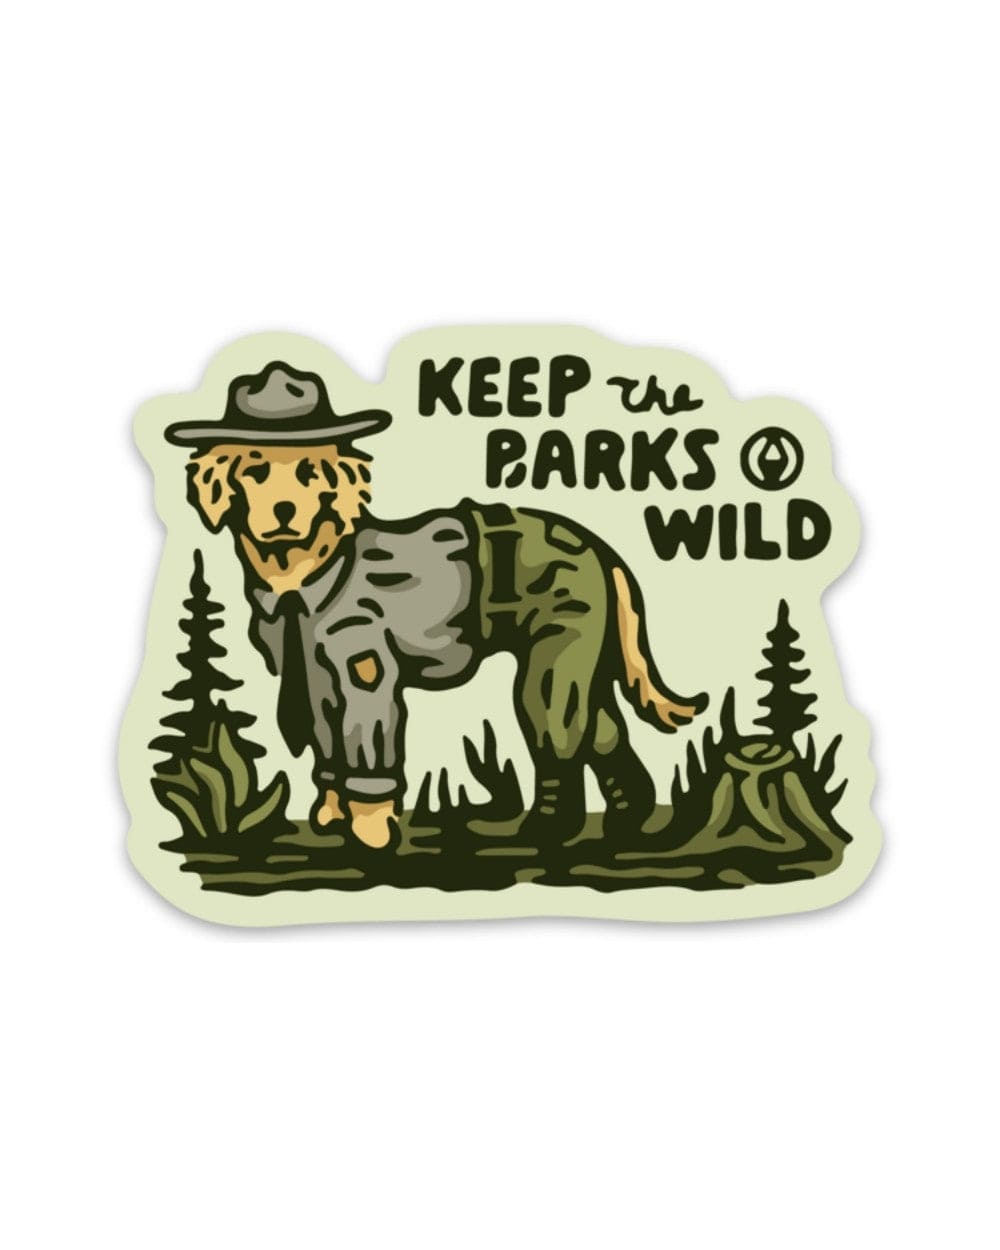 Keep Nature Wild Sticker Keep the Barks Wild | Sticker